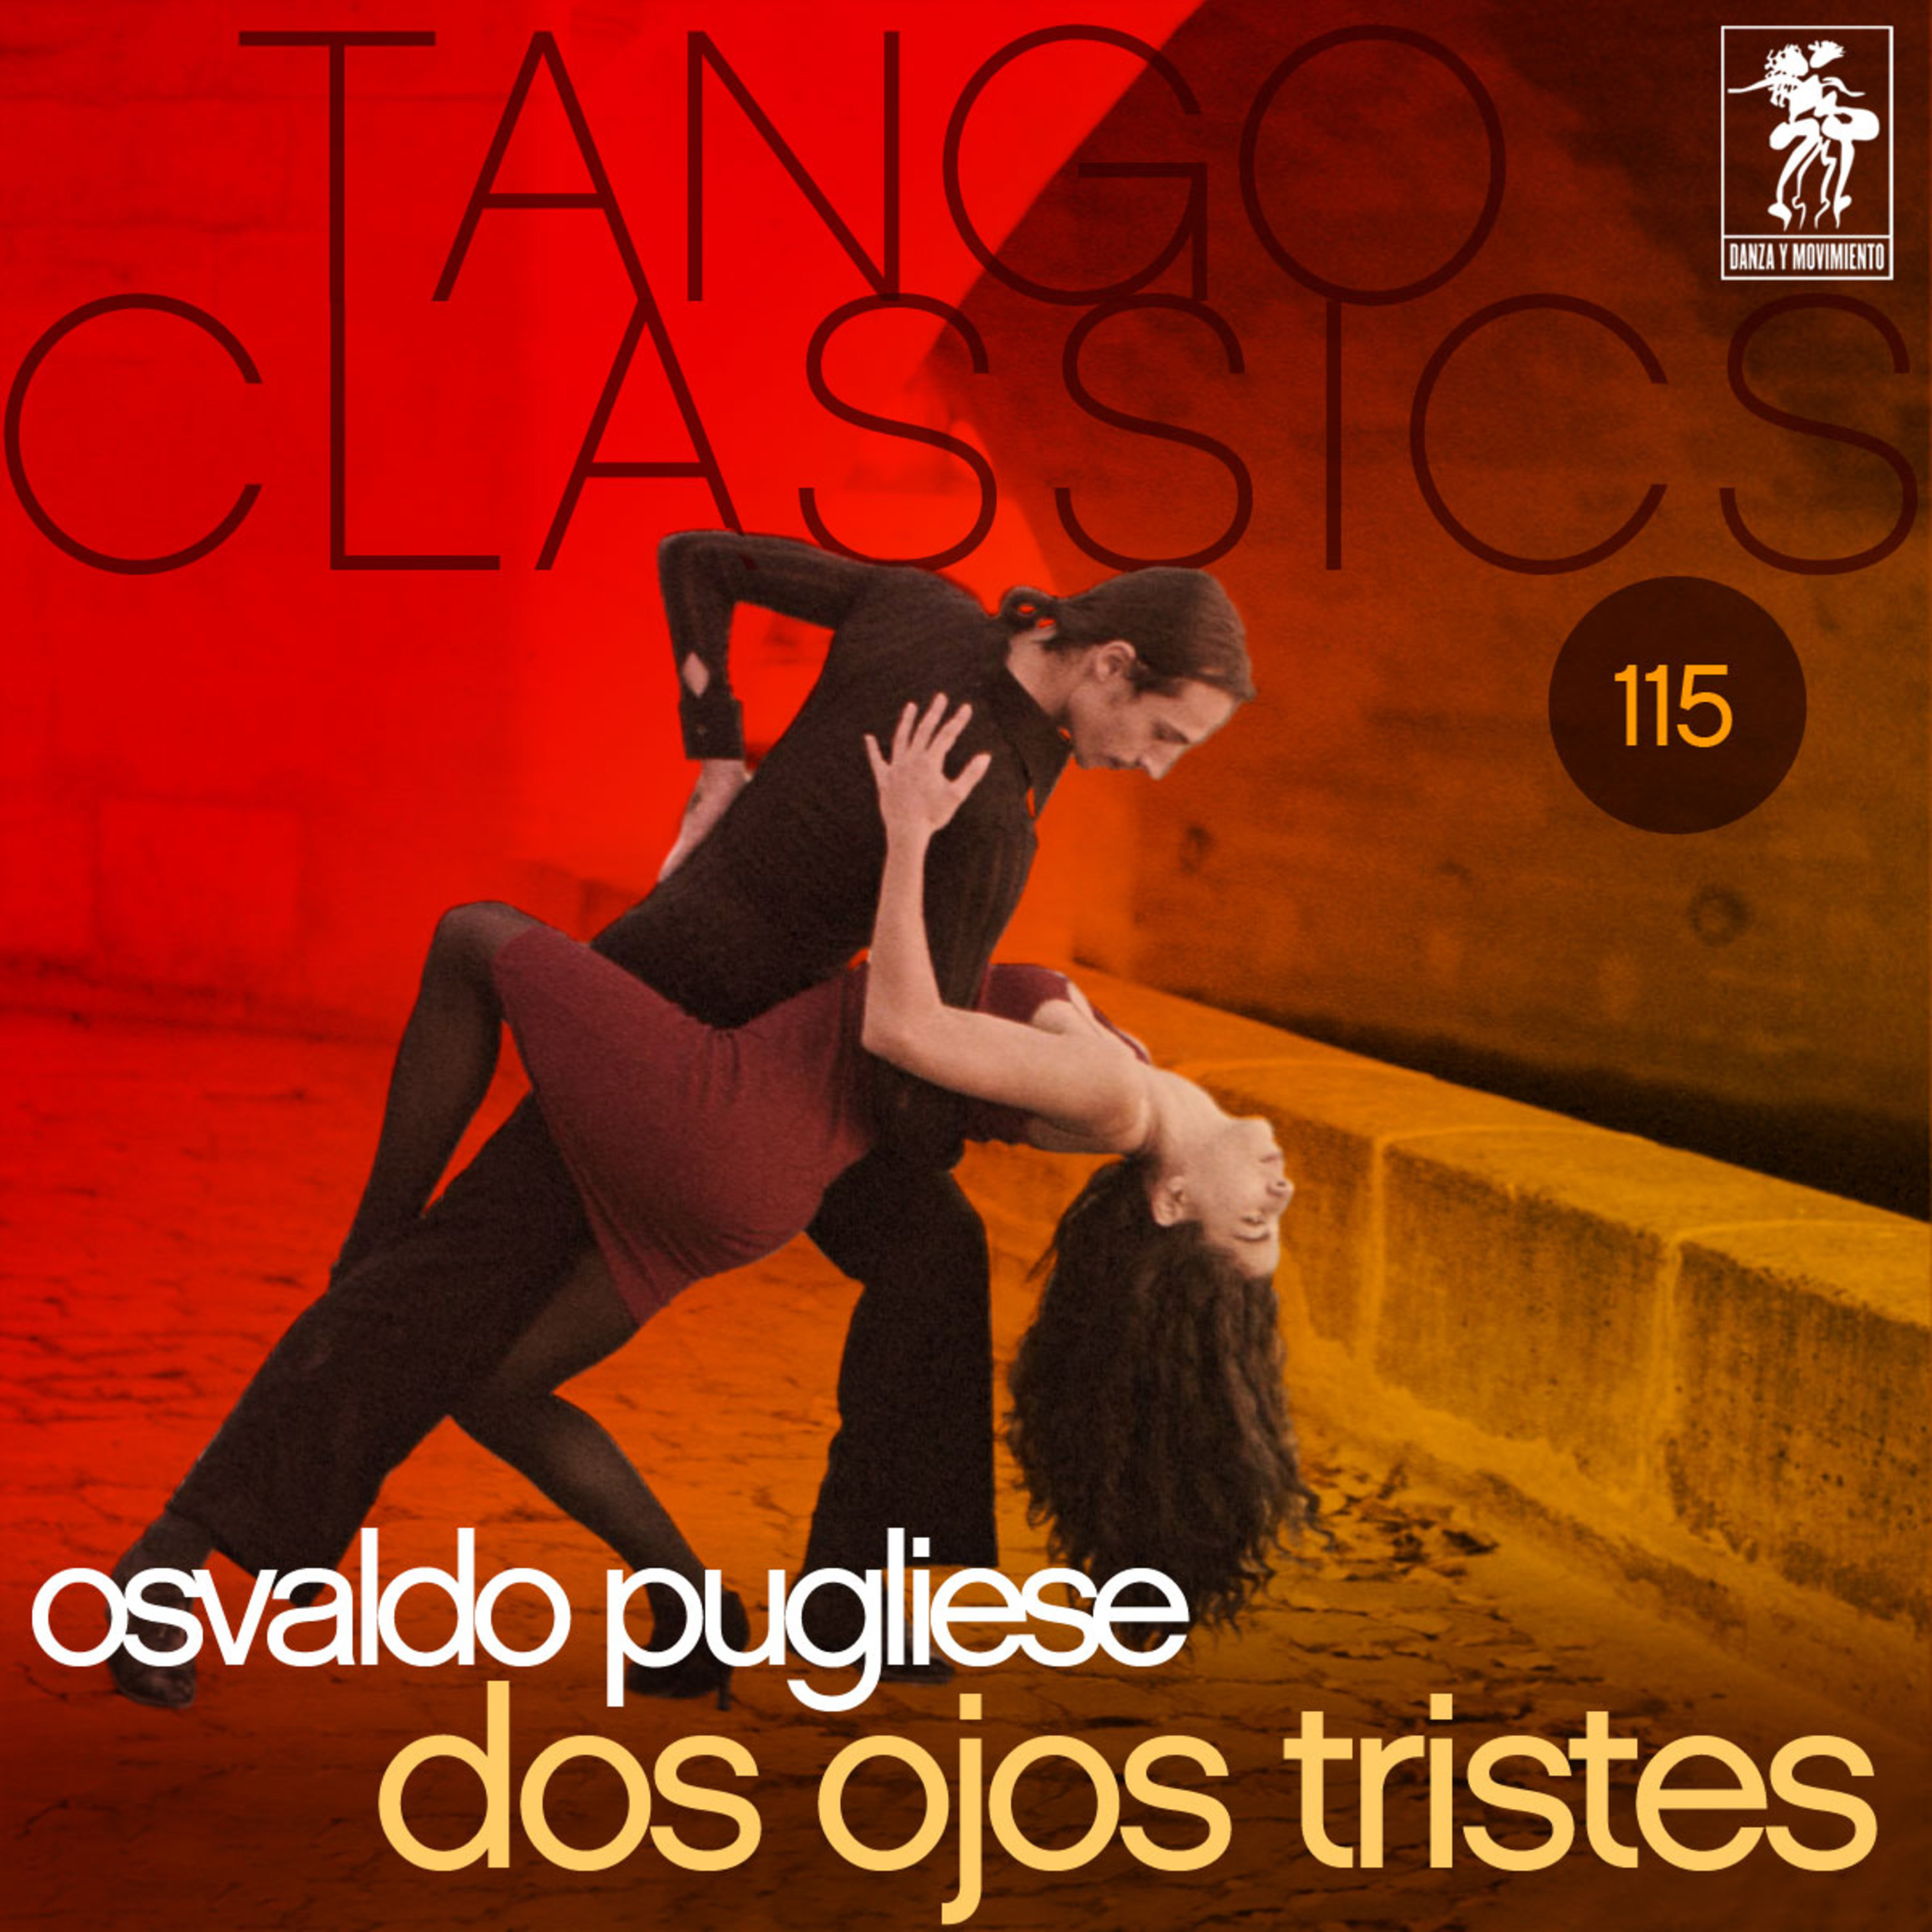 Tango Classics 115: Dos ojos tristes